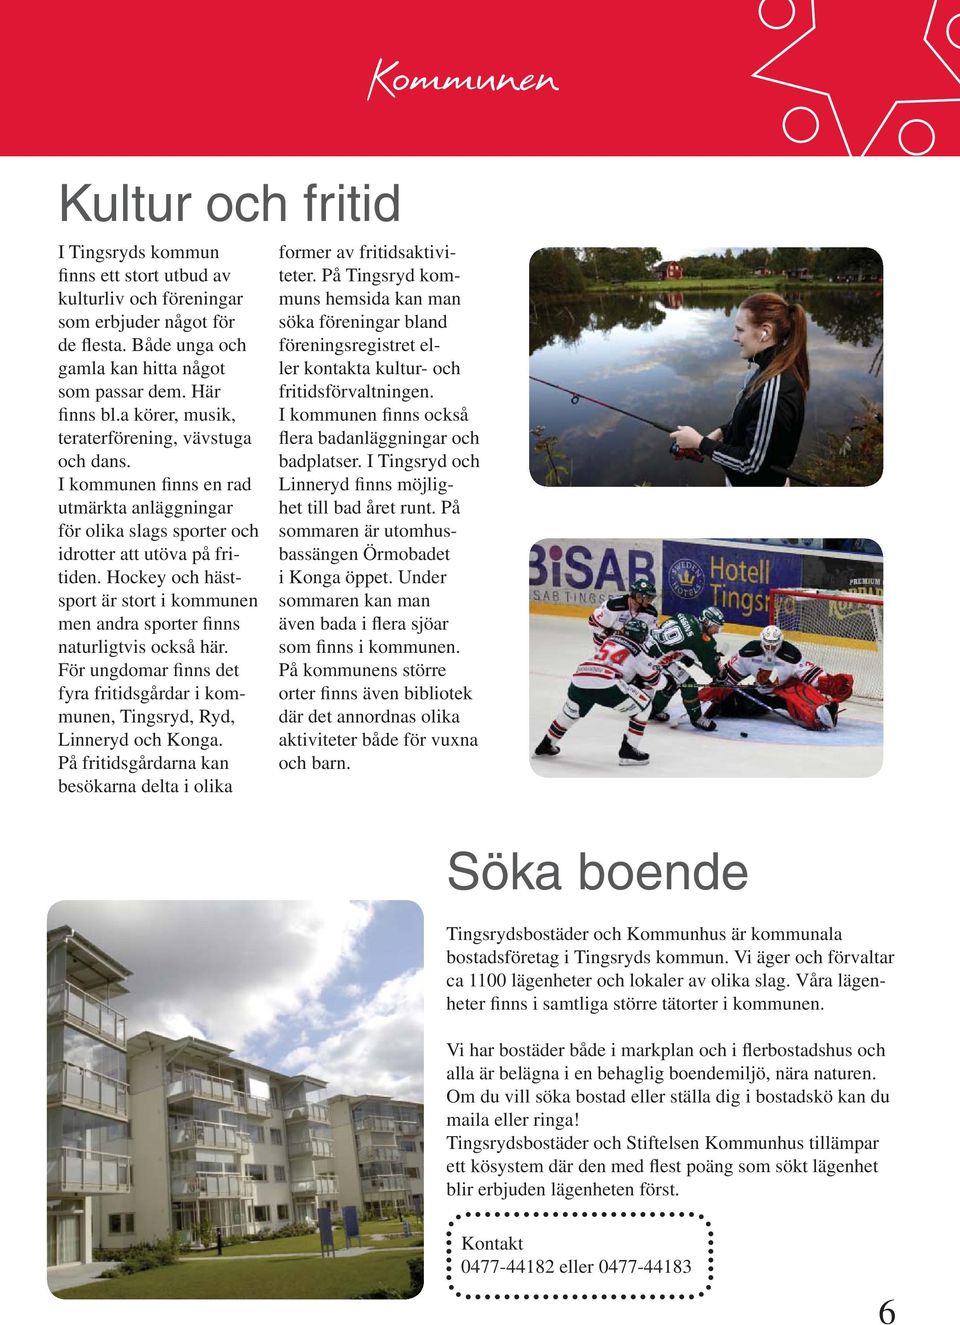 Hockey och hästsport är stort i kommunen men andra sporter finns naturligtvis också här. För ungdomar finns det fyra fritidsgårdar i kommunen, Tingsryd, Ryd, Linneryd och Konga.